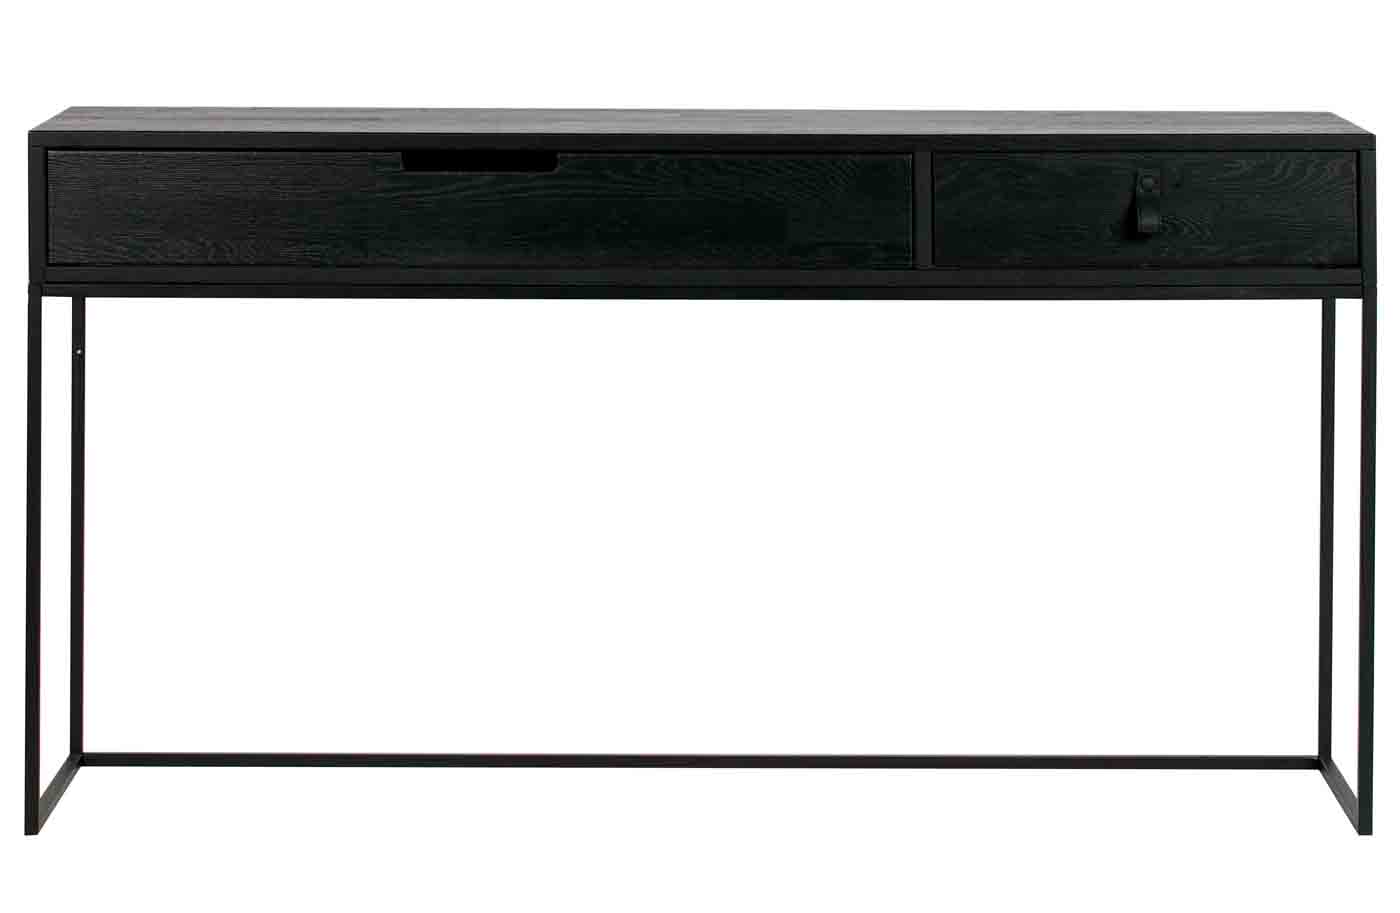 Konsole und Schreibtisch in einem, die Silas Konsole aus Eichenholz wurde schwarz lackiert und bietet mit den Schubladen noch weiteren Stauraum